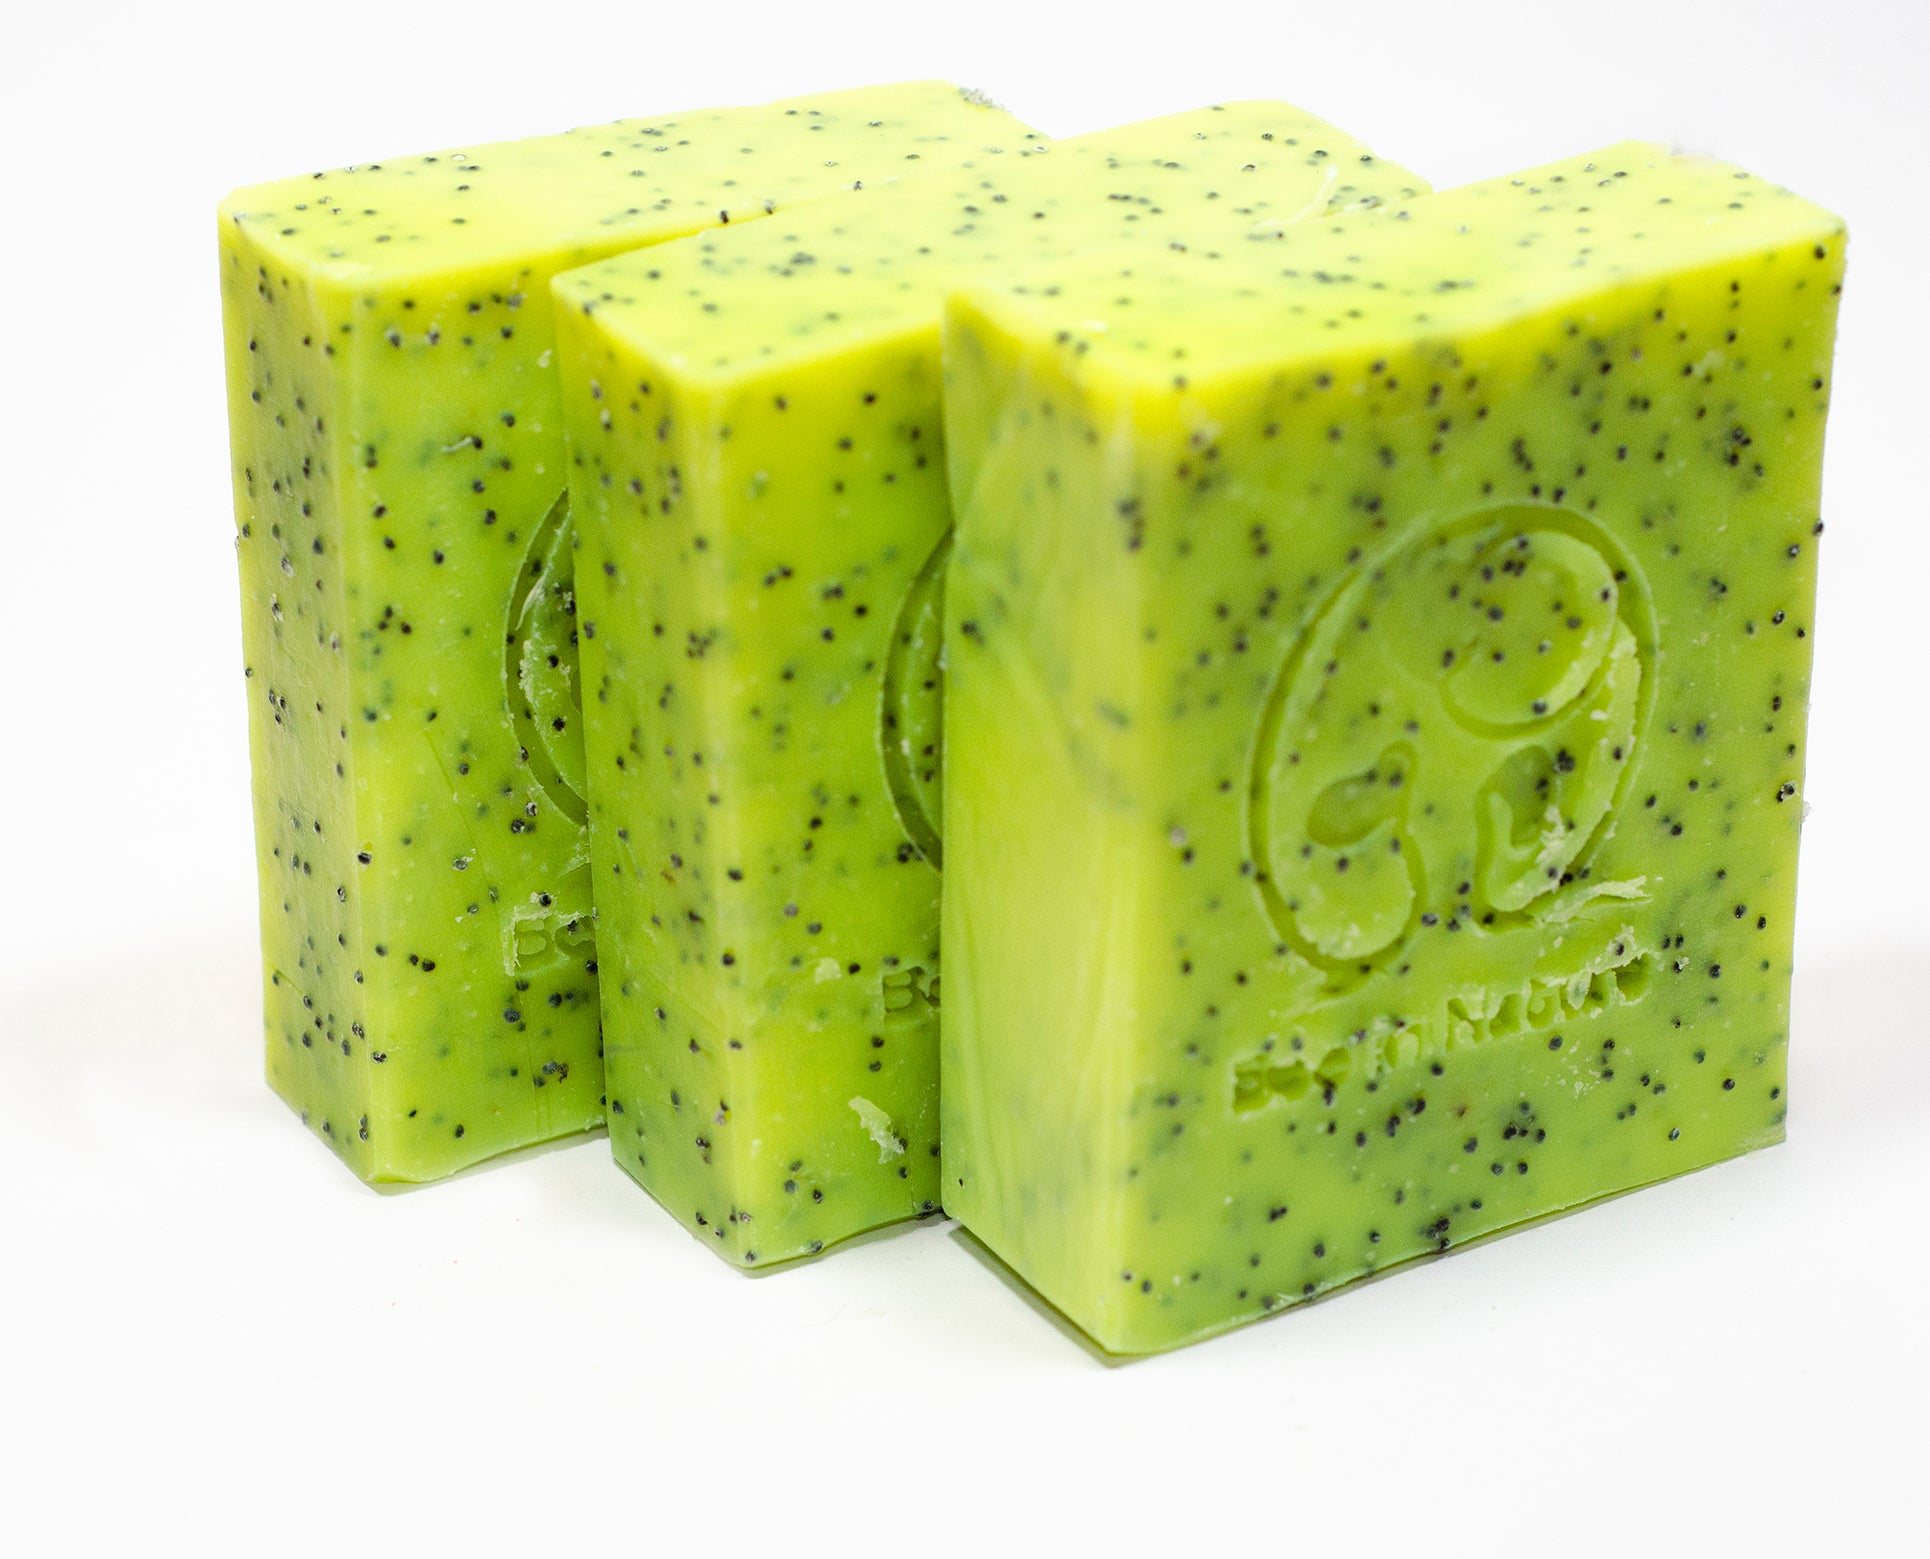 Vegan Natural Handmade Soap Bar